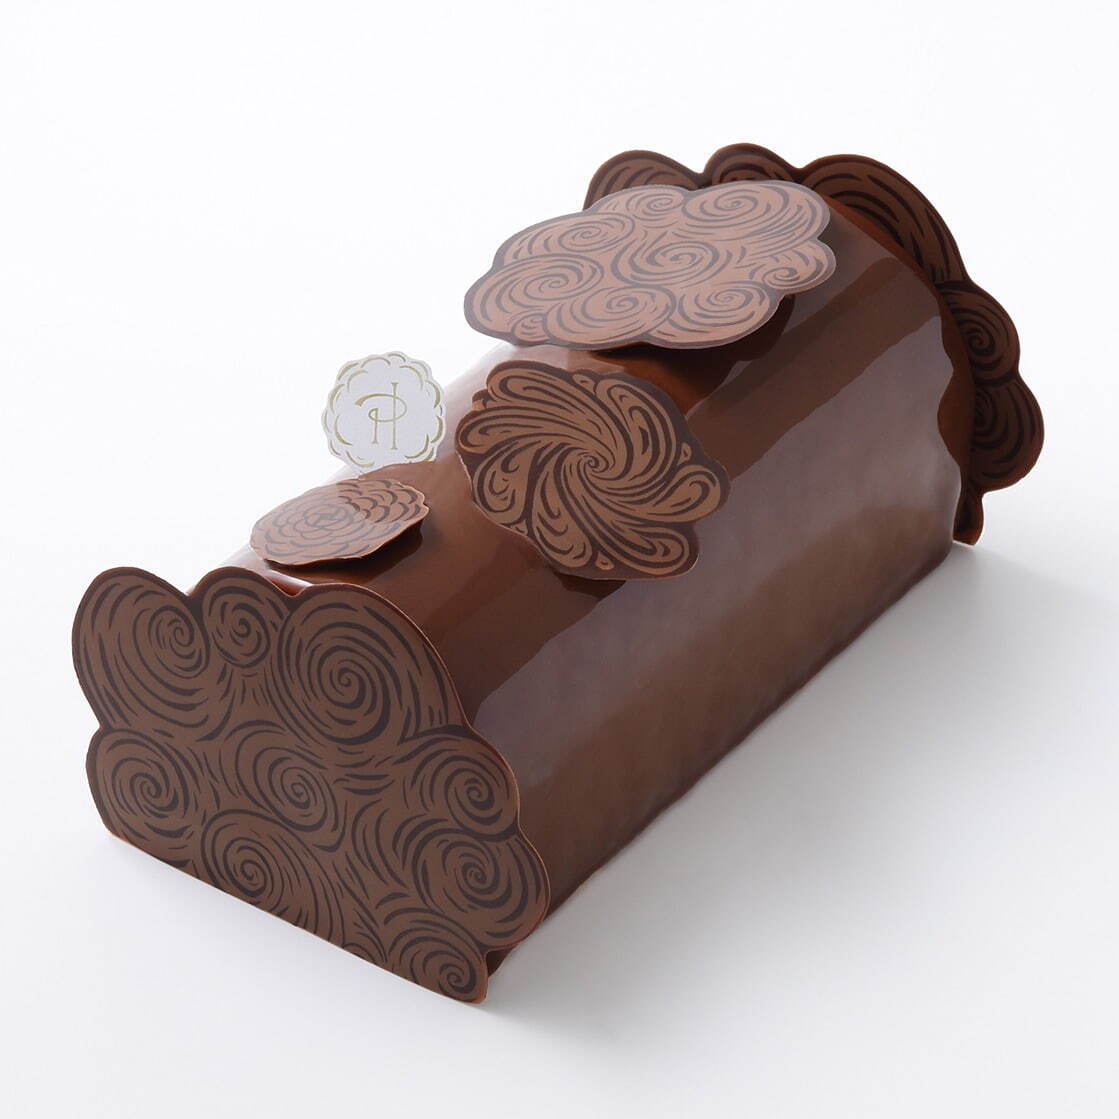 ピエール・エルメ・パリ - “浮雲の花”のチョコケーキ